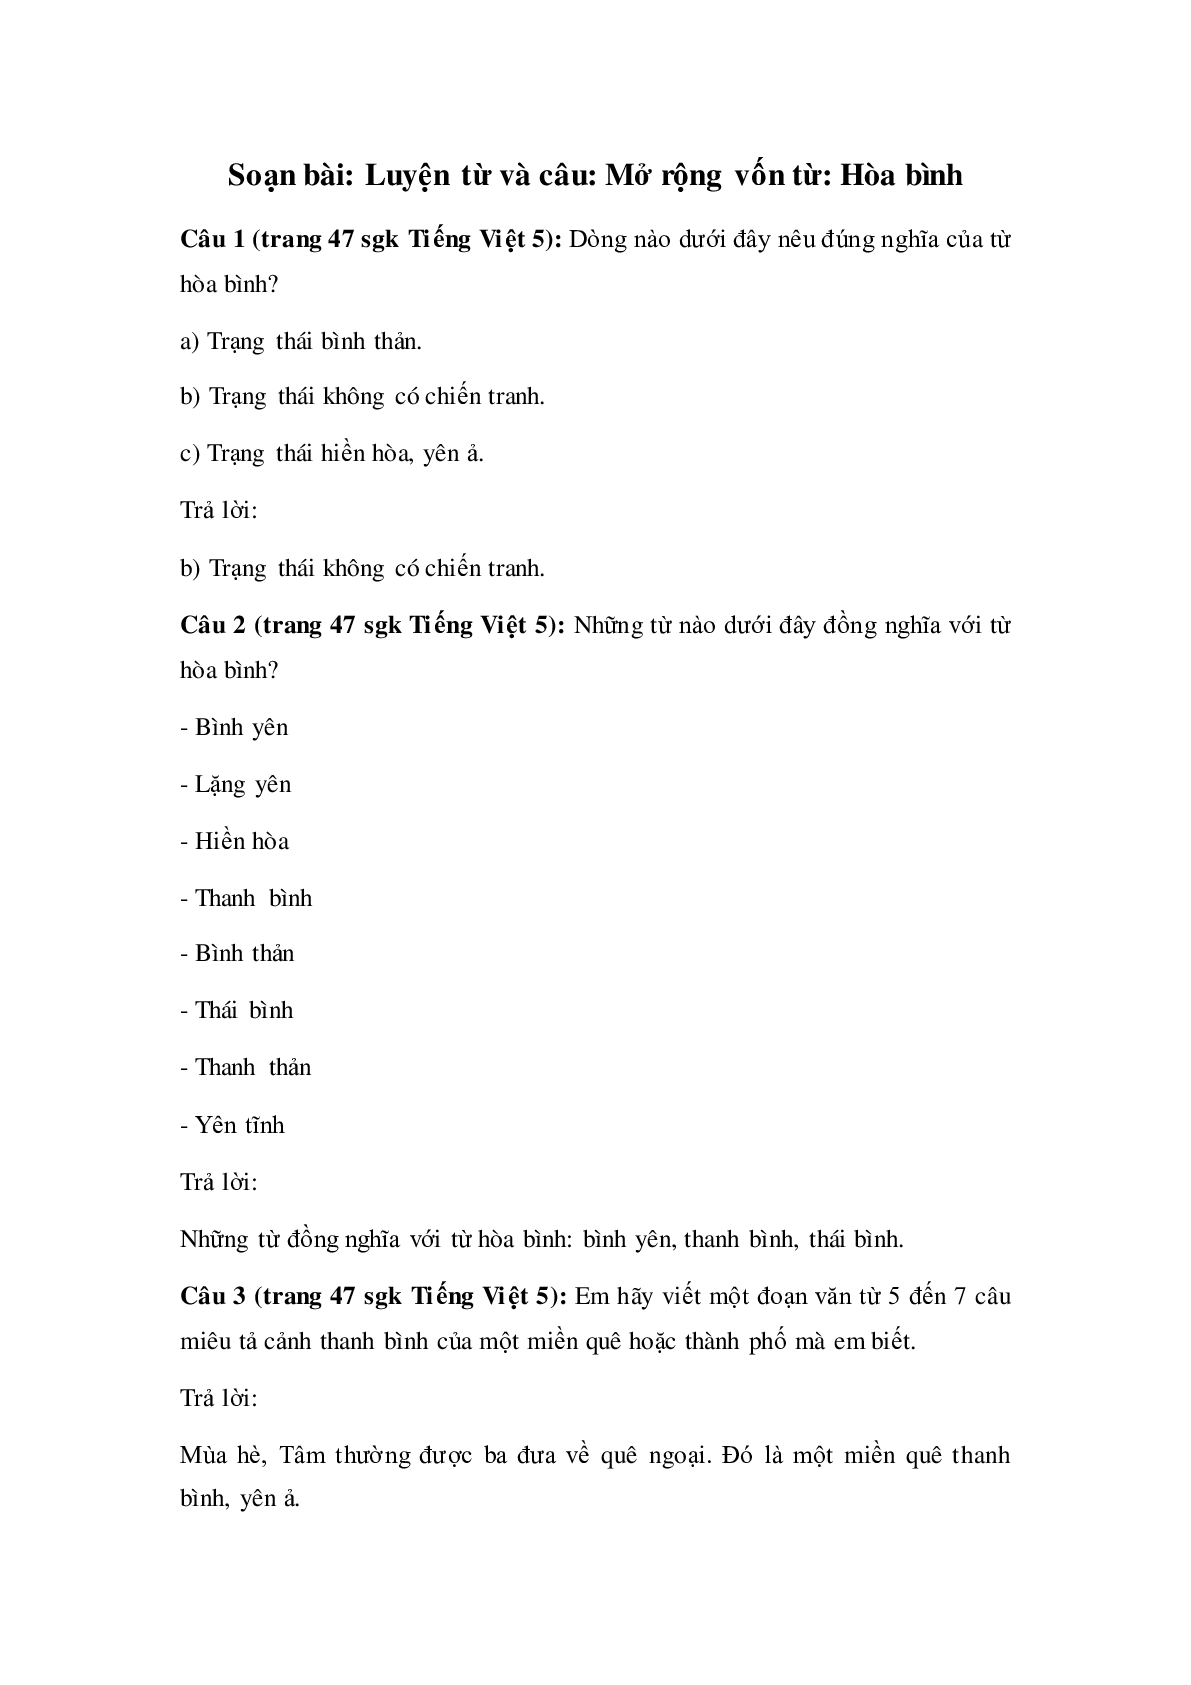 Soạn Tiếng Việt lớp 5: Luyện từ và câu: Mở rộng vốn từ: Hòa bình mới nhất (trang 1)